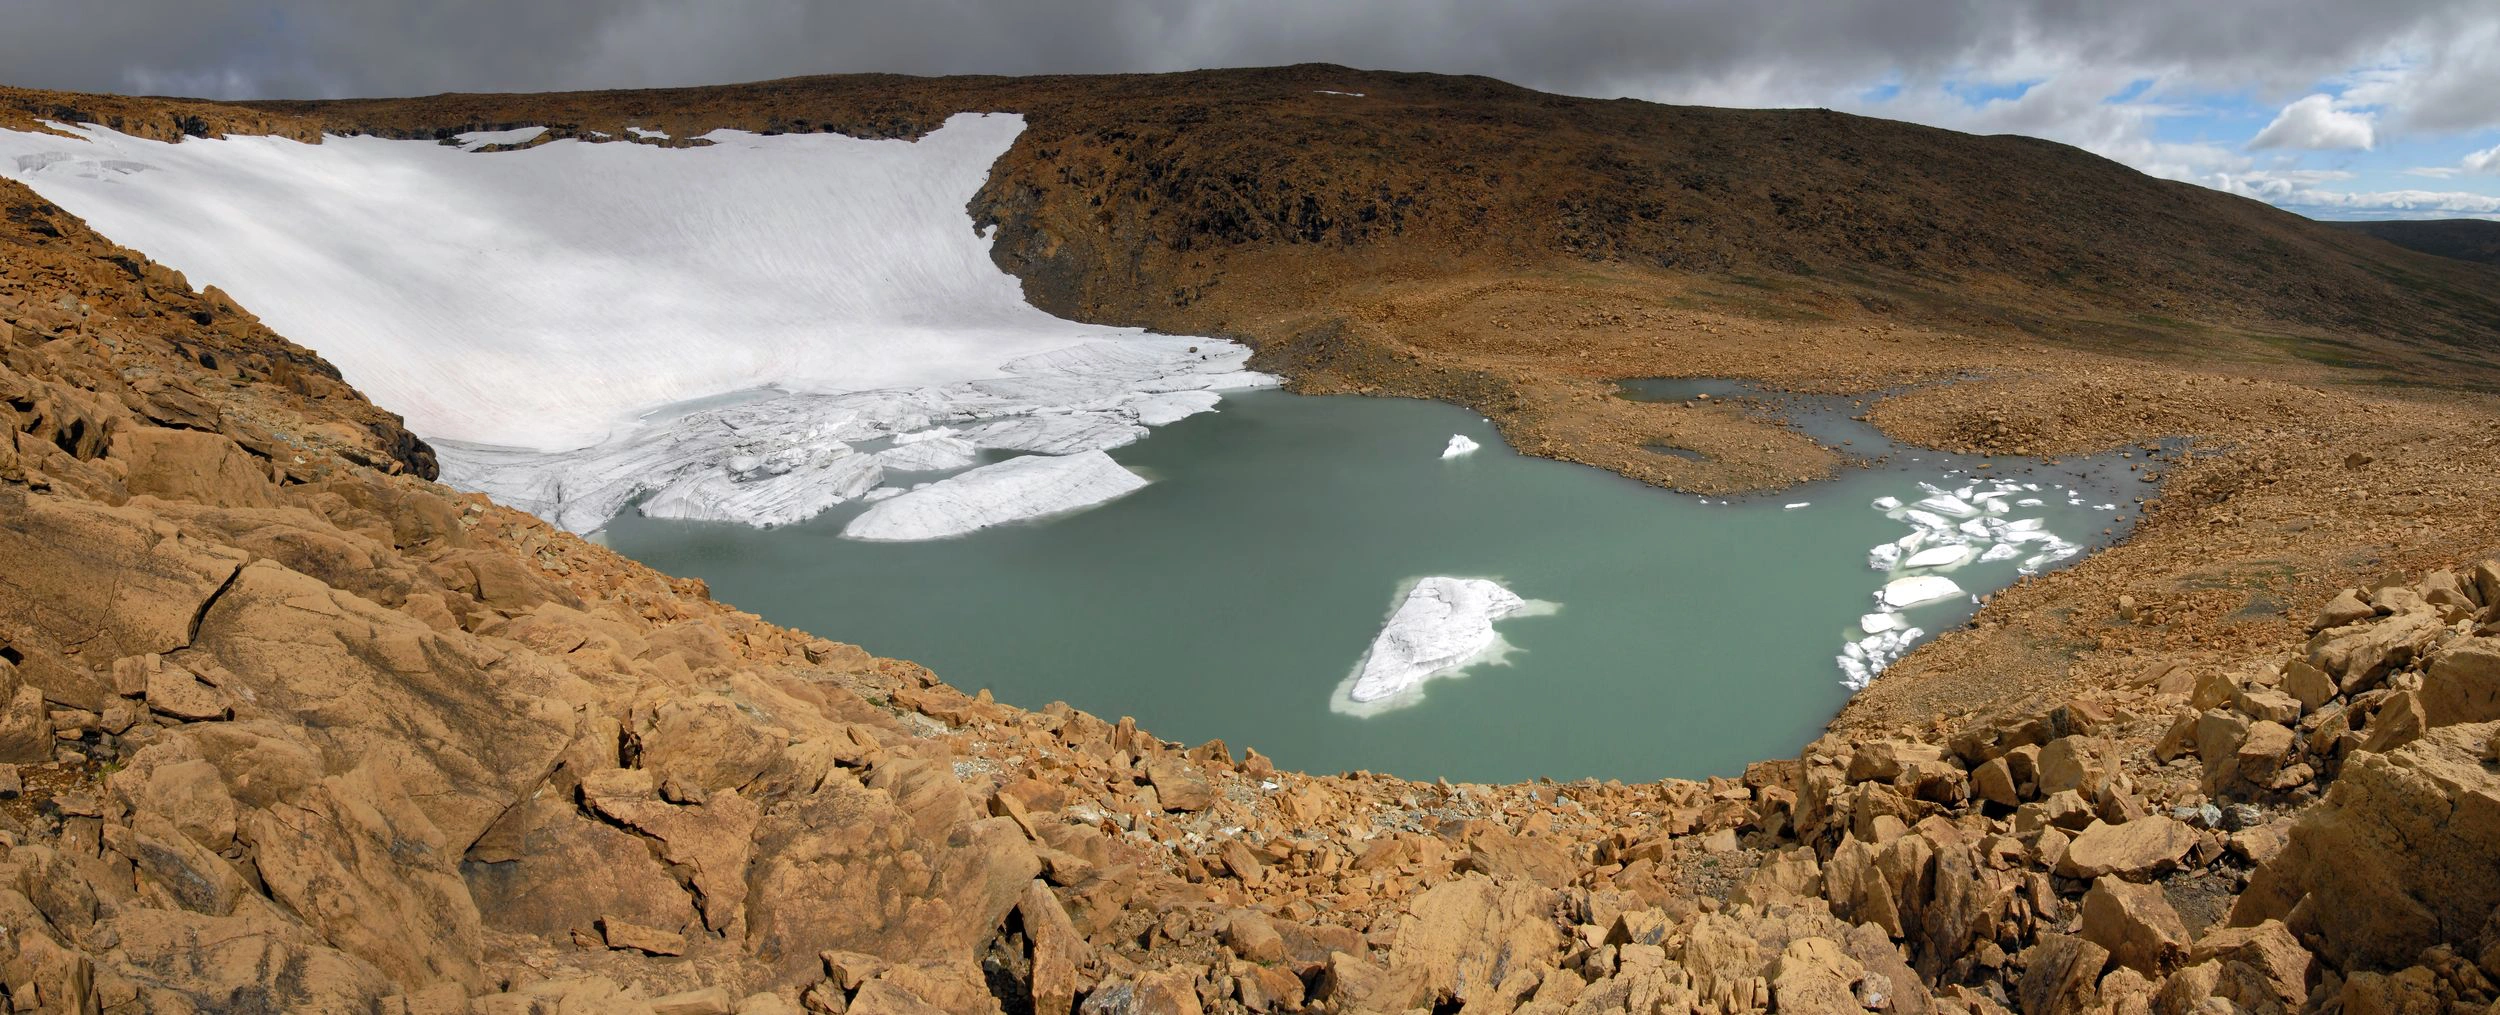 На Ямале туристы совершат массовое восхождение на ледник Романтиков